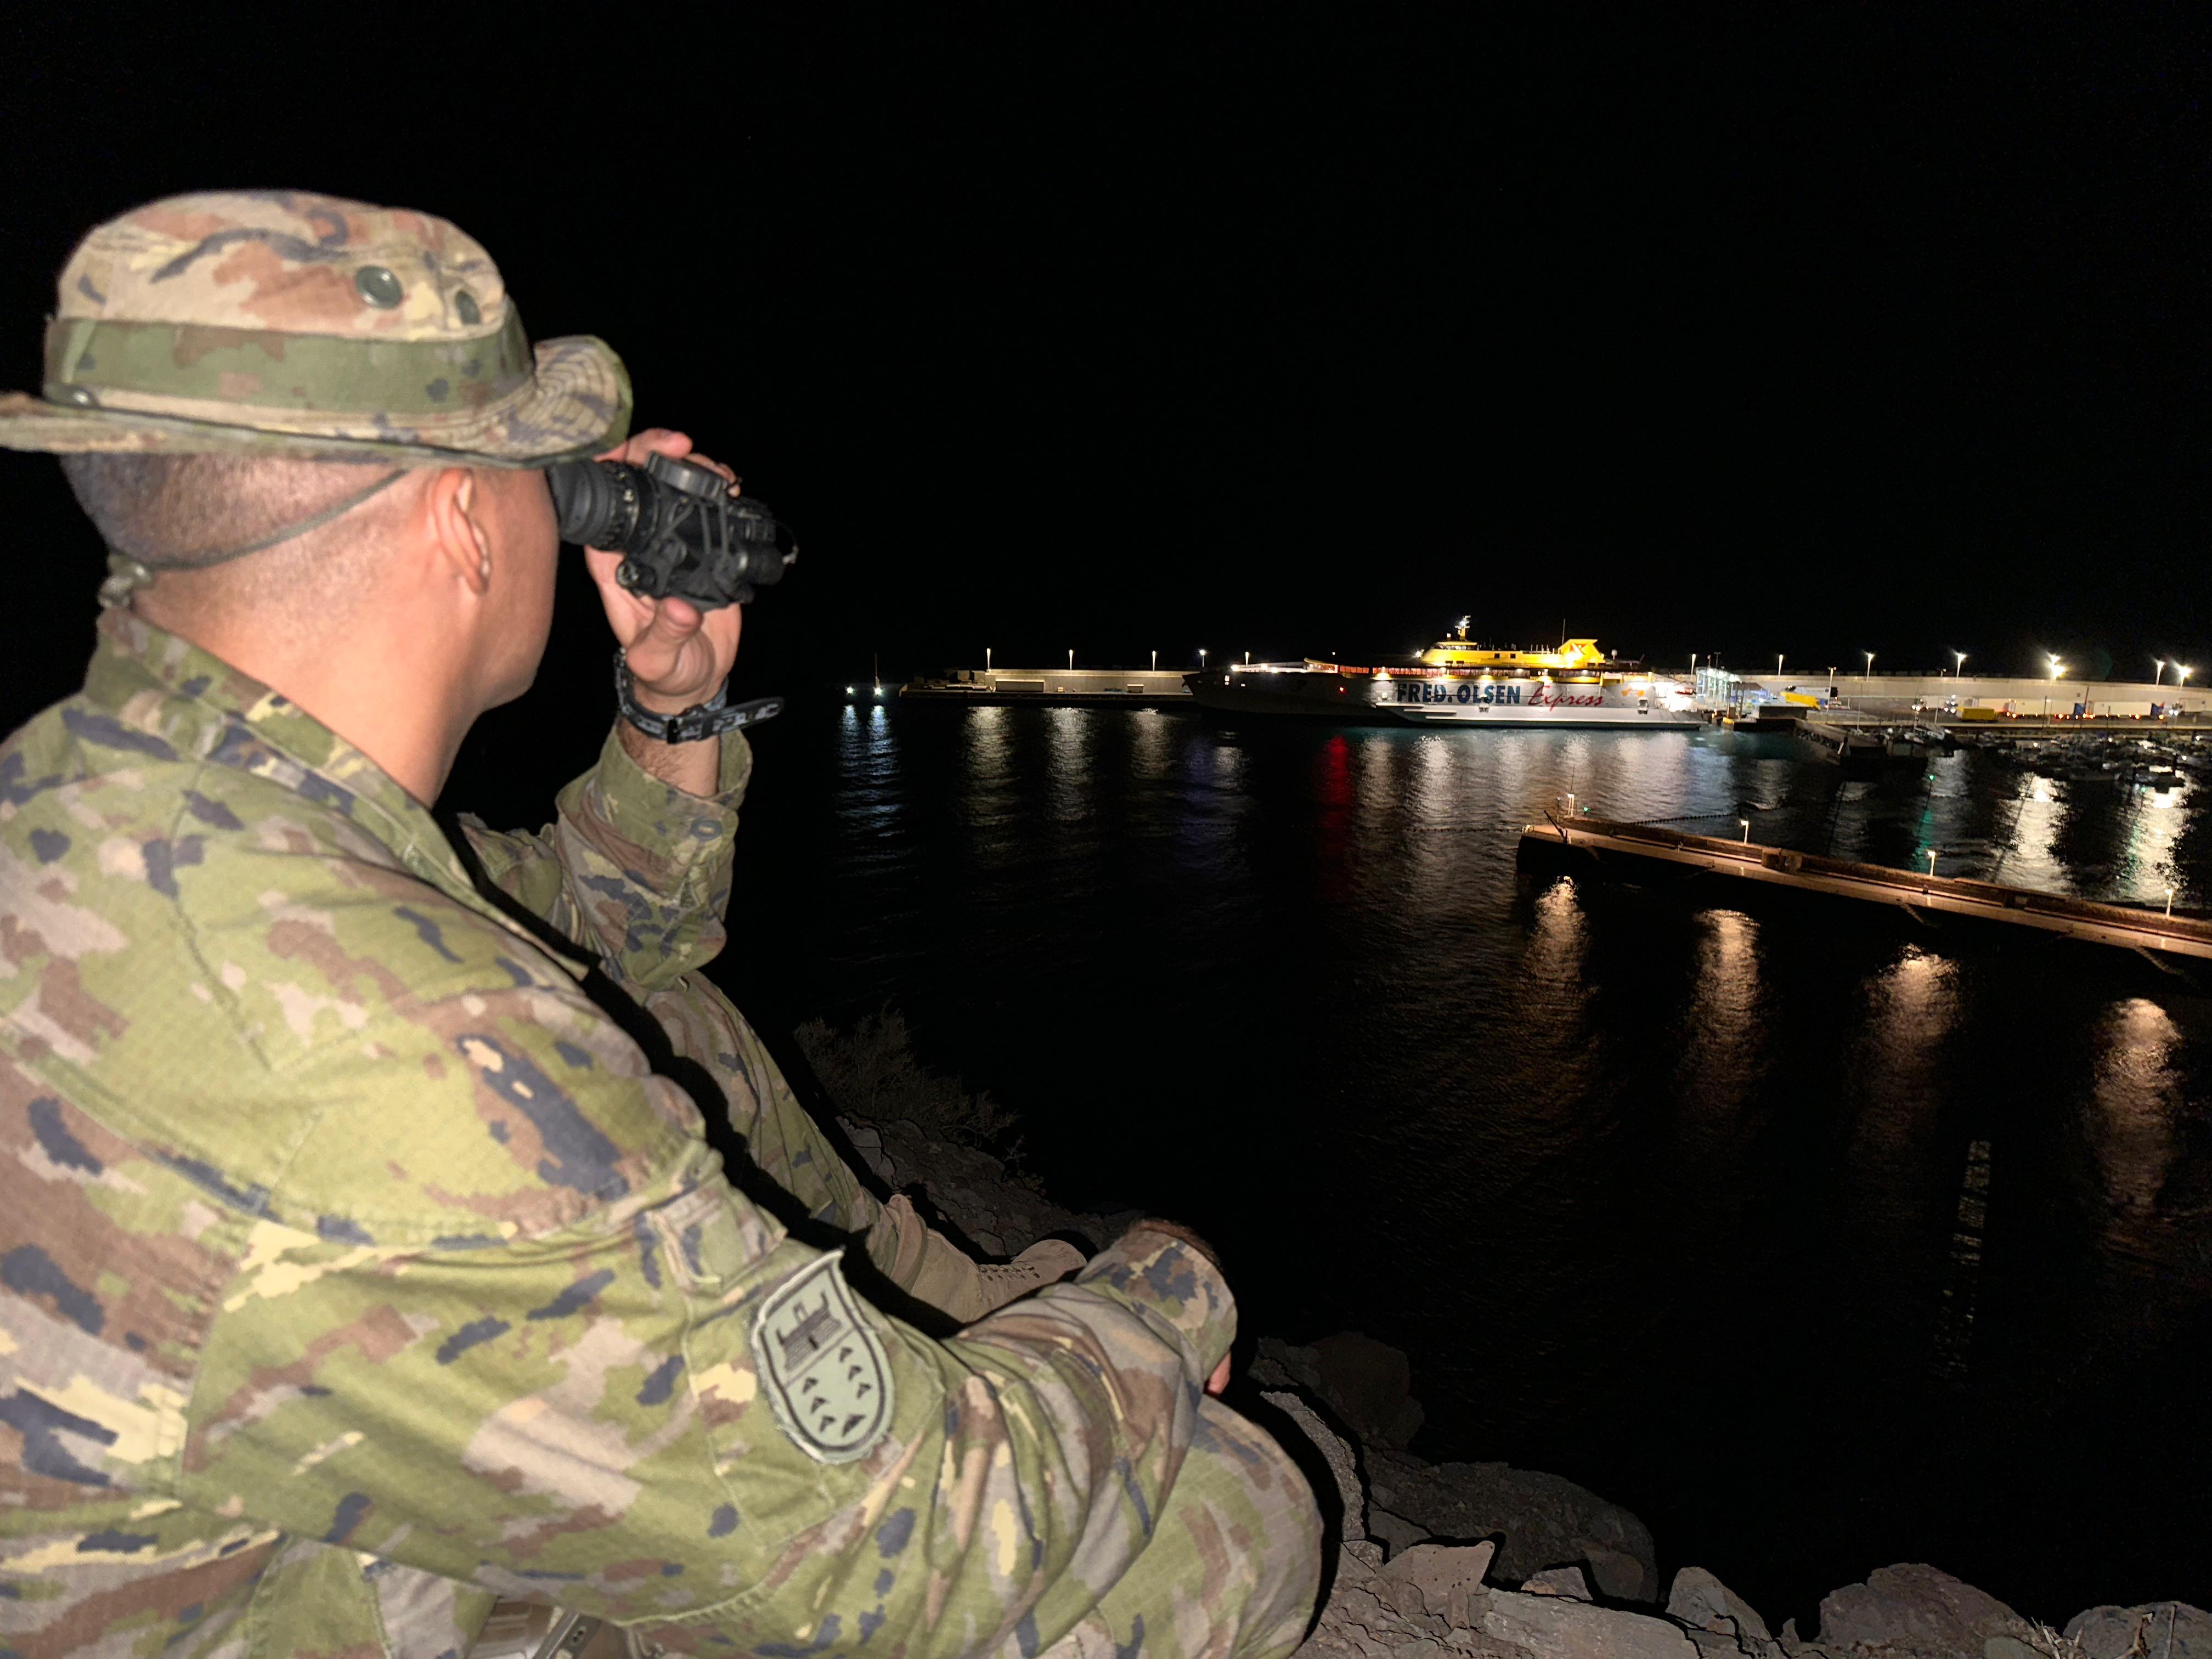 Vigilancia nocturna Puerto de las Nieves